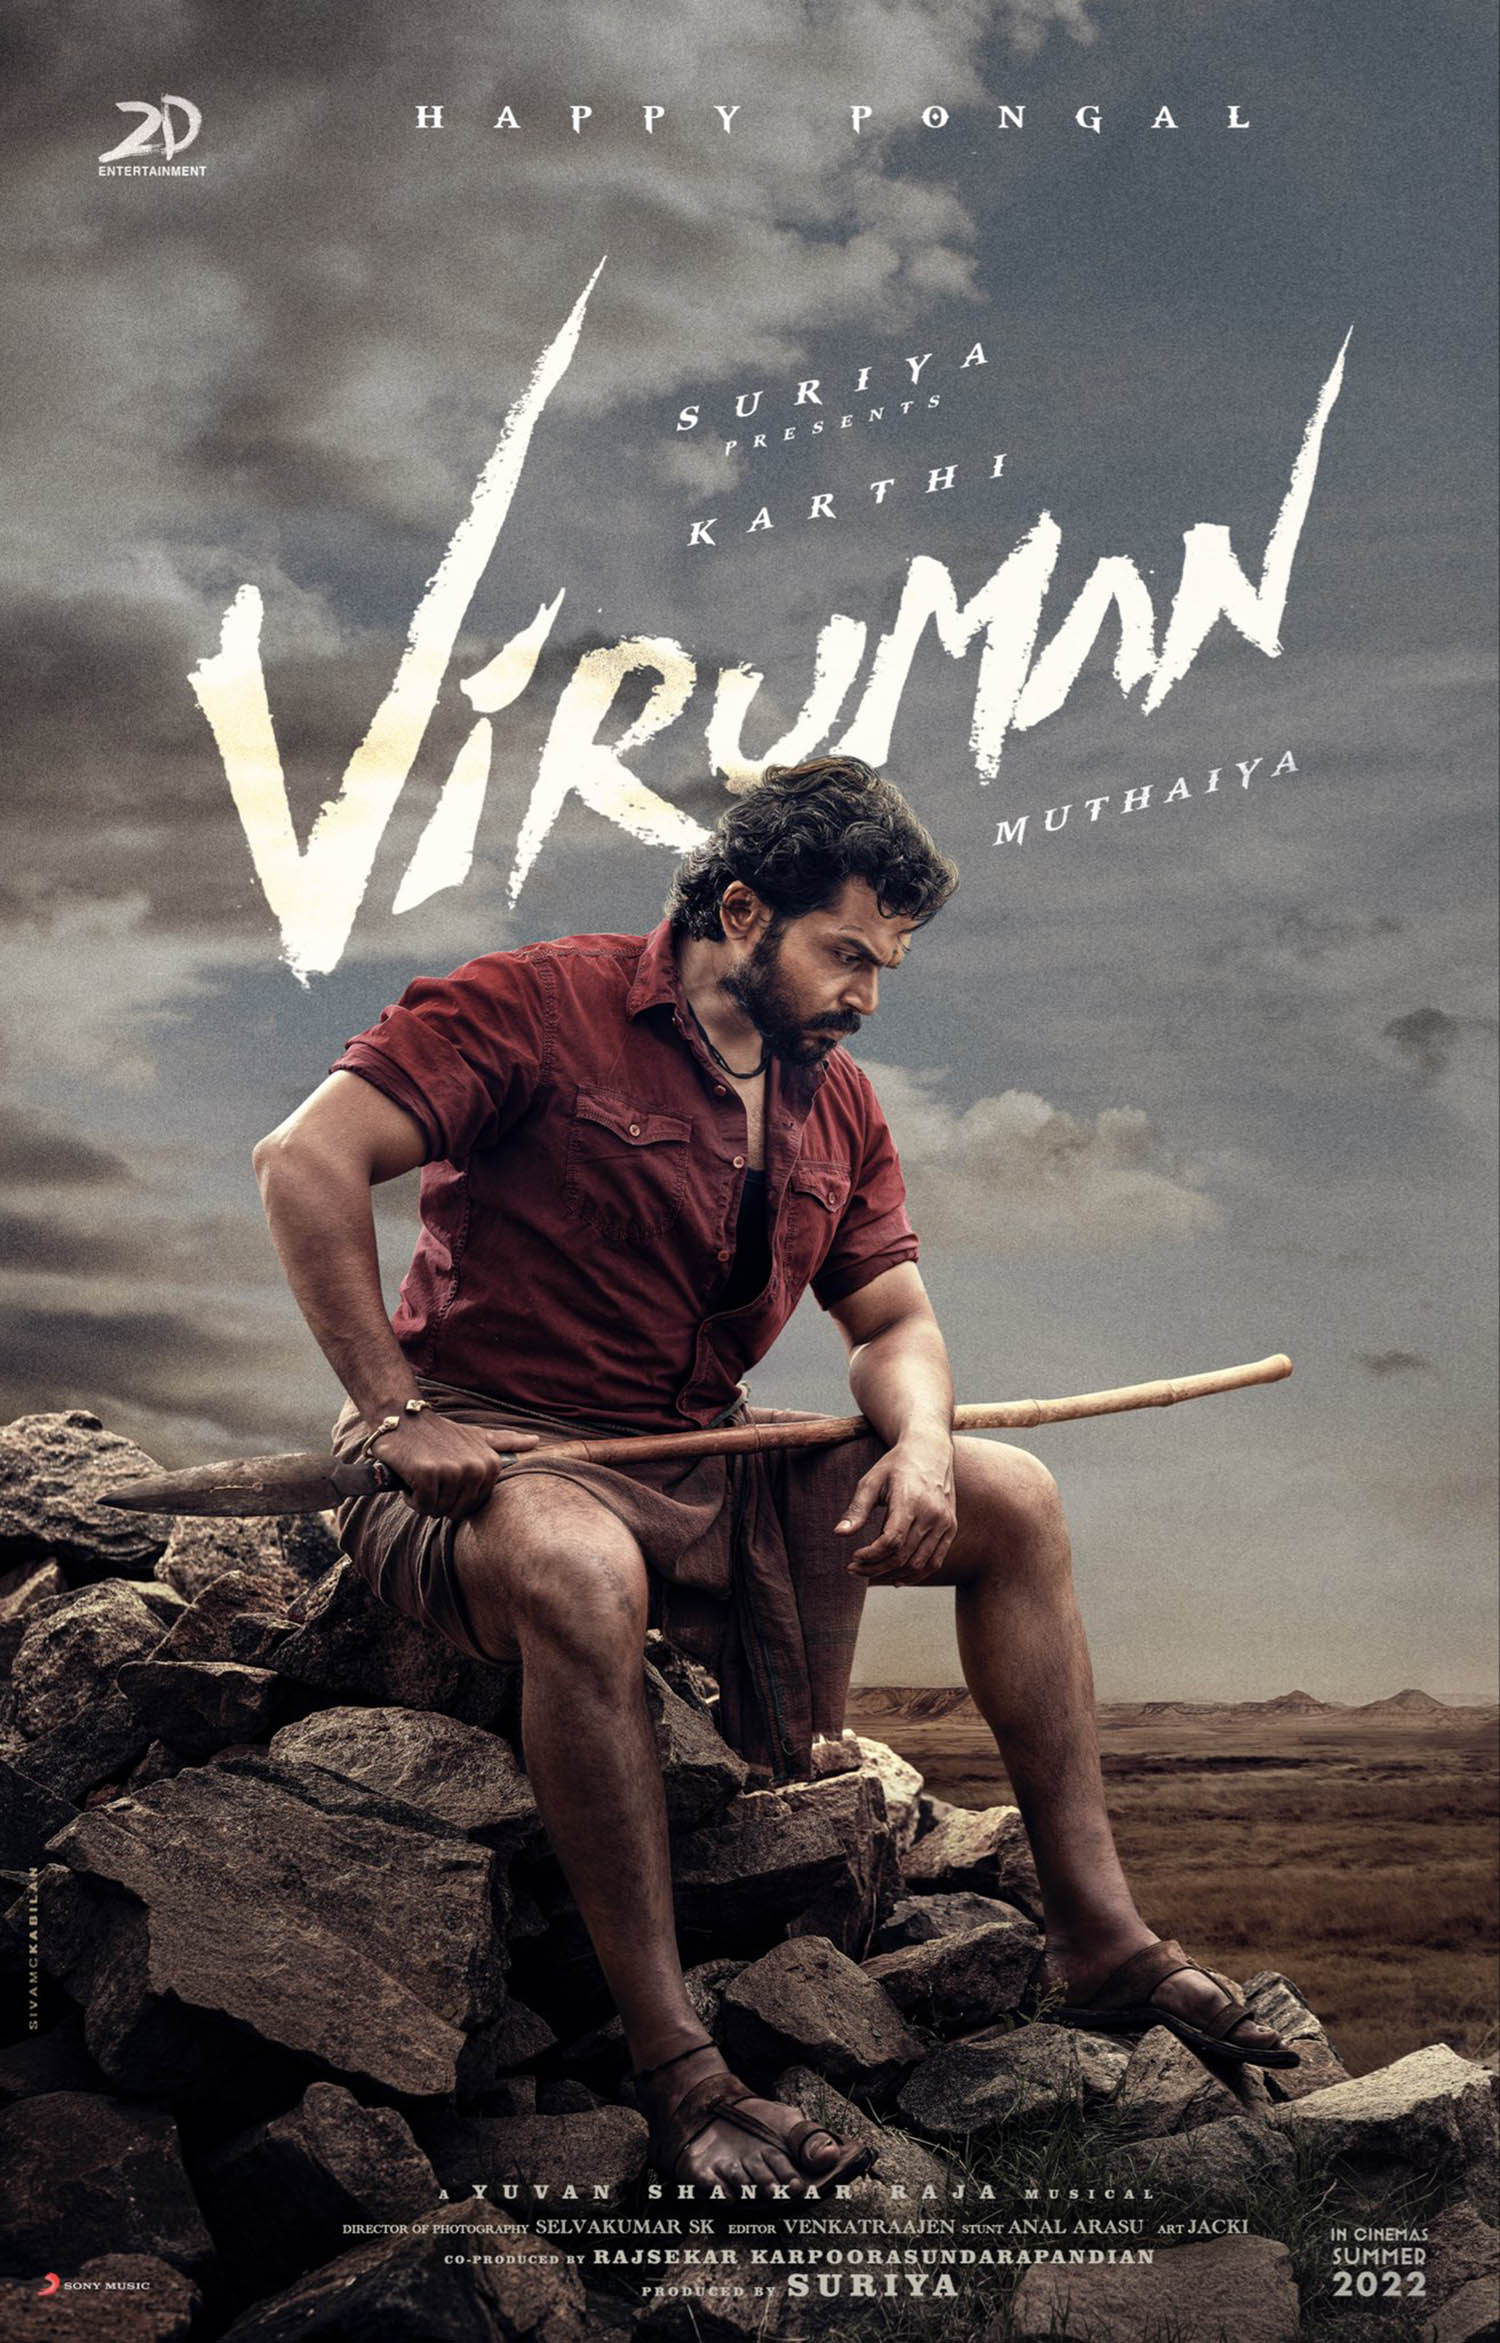 Viruman,actor karthi,director m muthaiya,viruman first look,actor karthi new tamil cinema 2022,karthi in viruman,kollywood updates,actor karthi latest film news,tamil new movie updates 2022